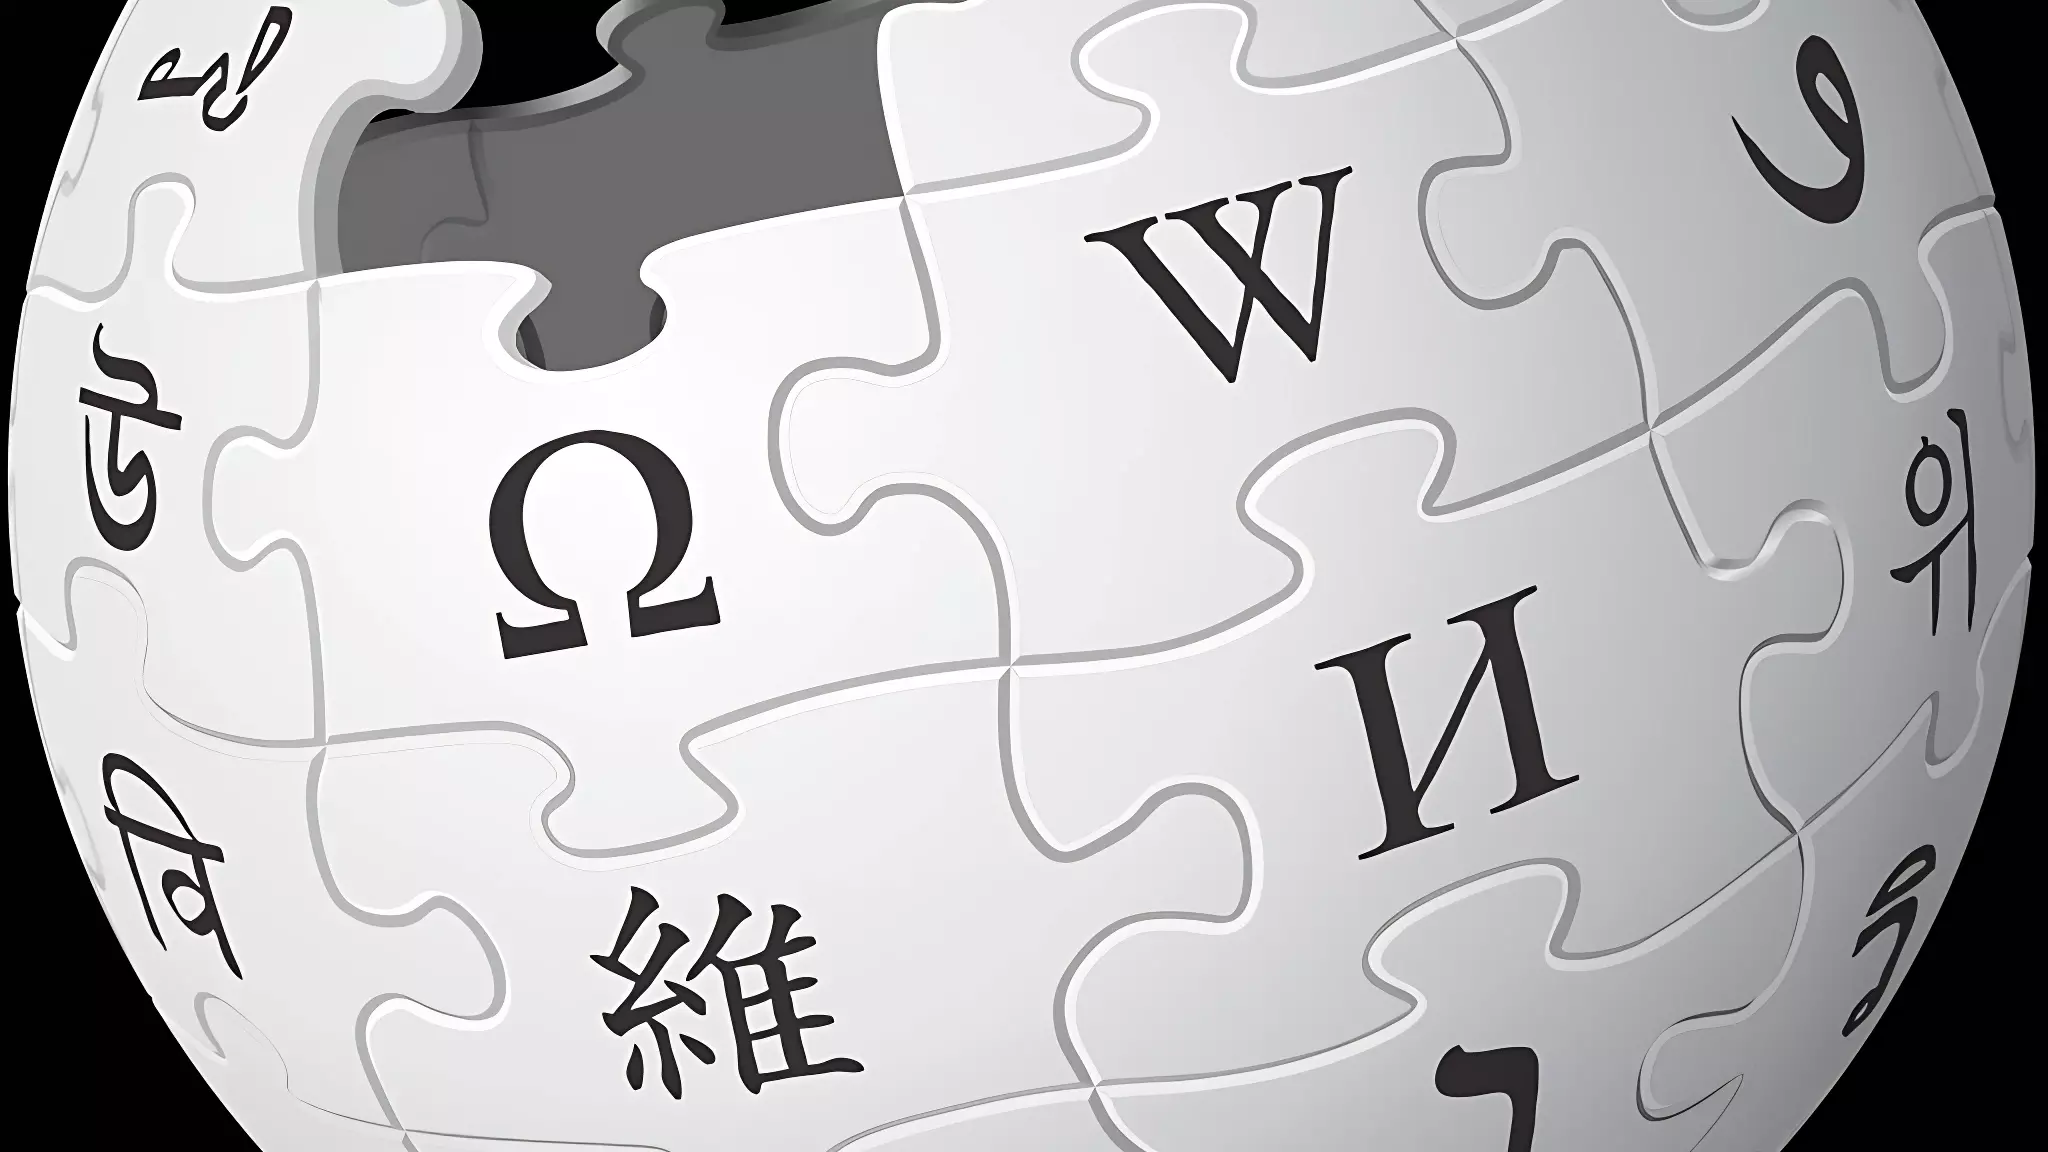 Останется ли российский элемент в классической Википедии?